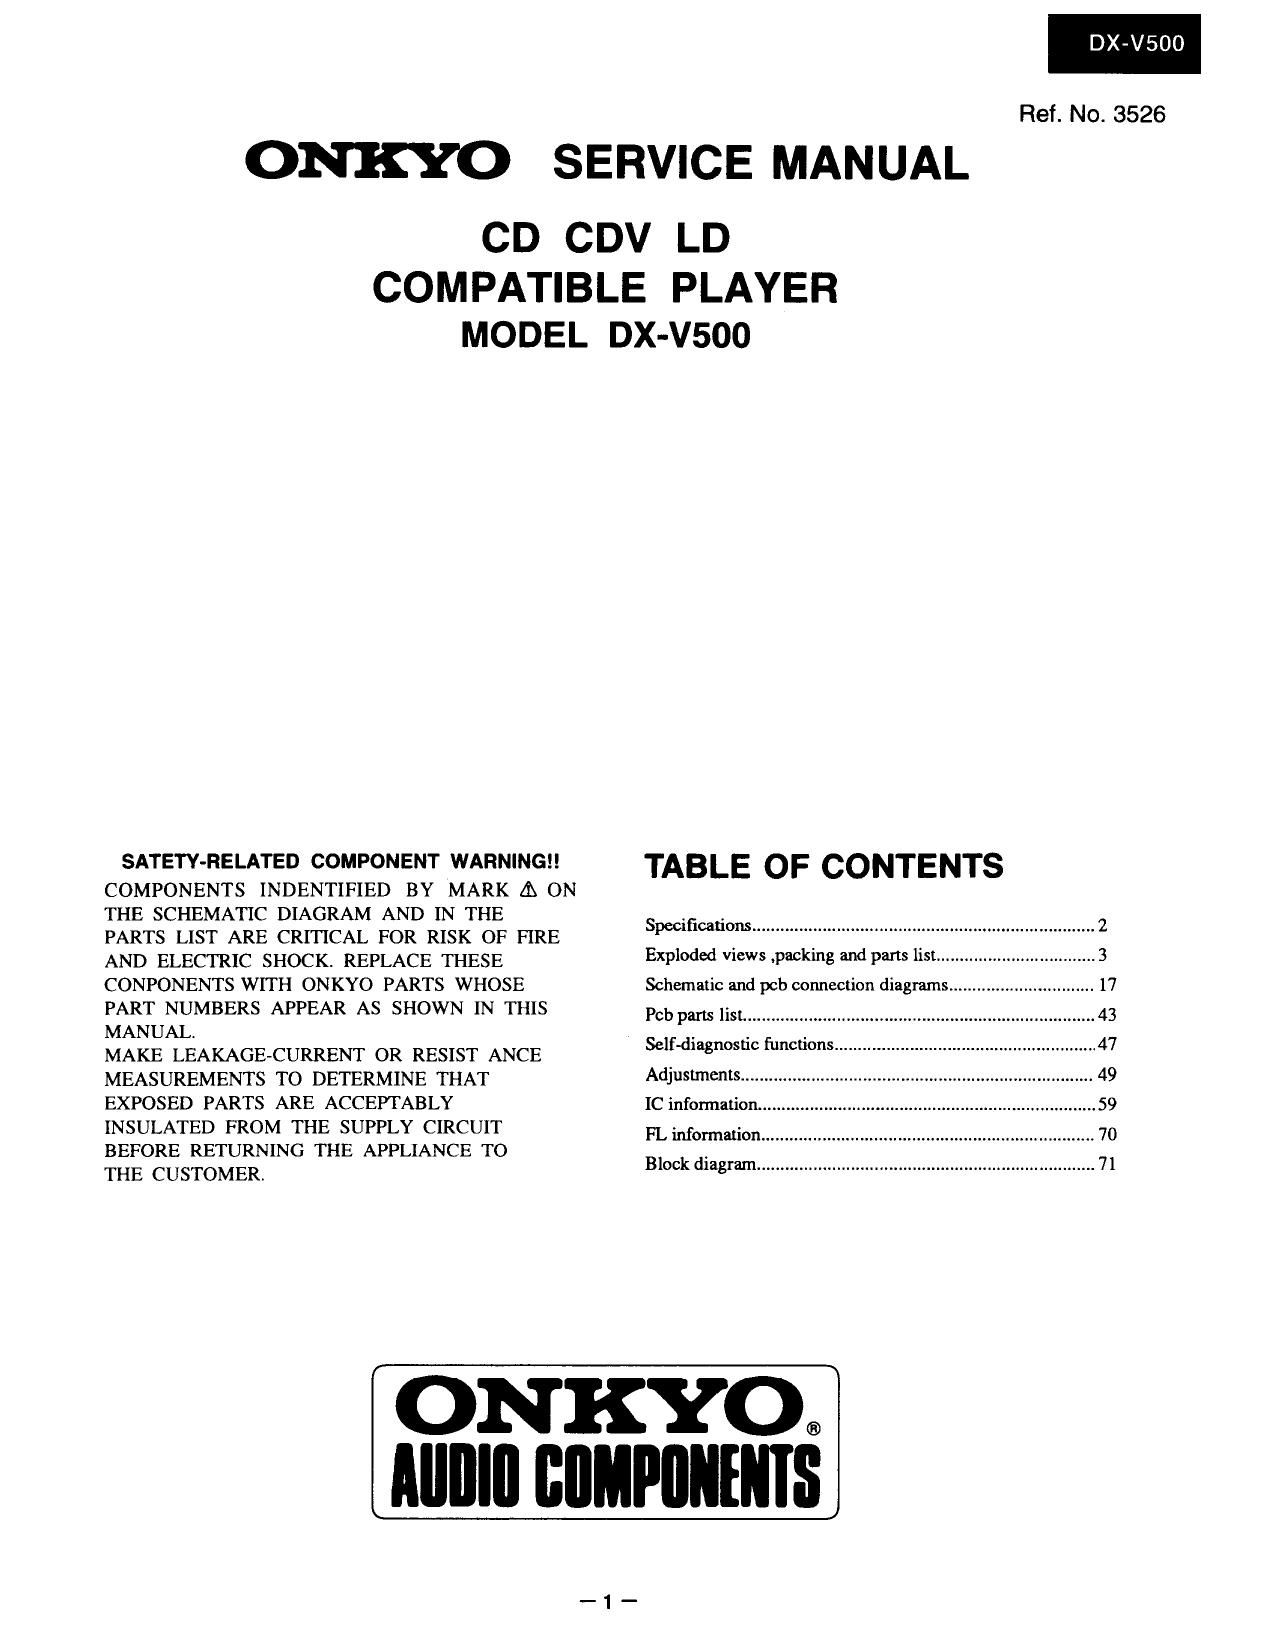 Onkyo DXV 500 Service Manual